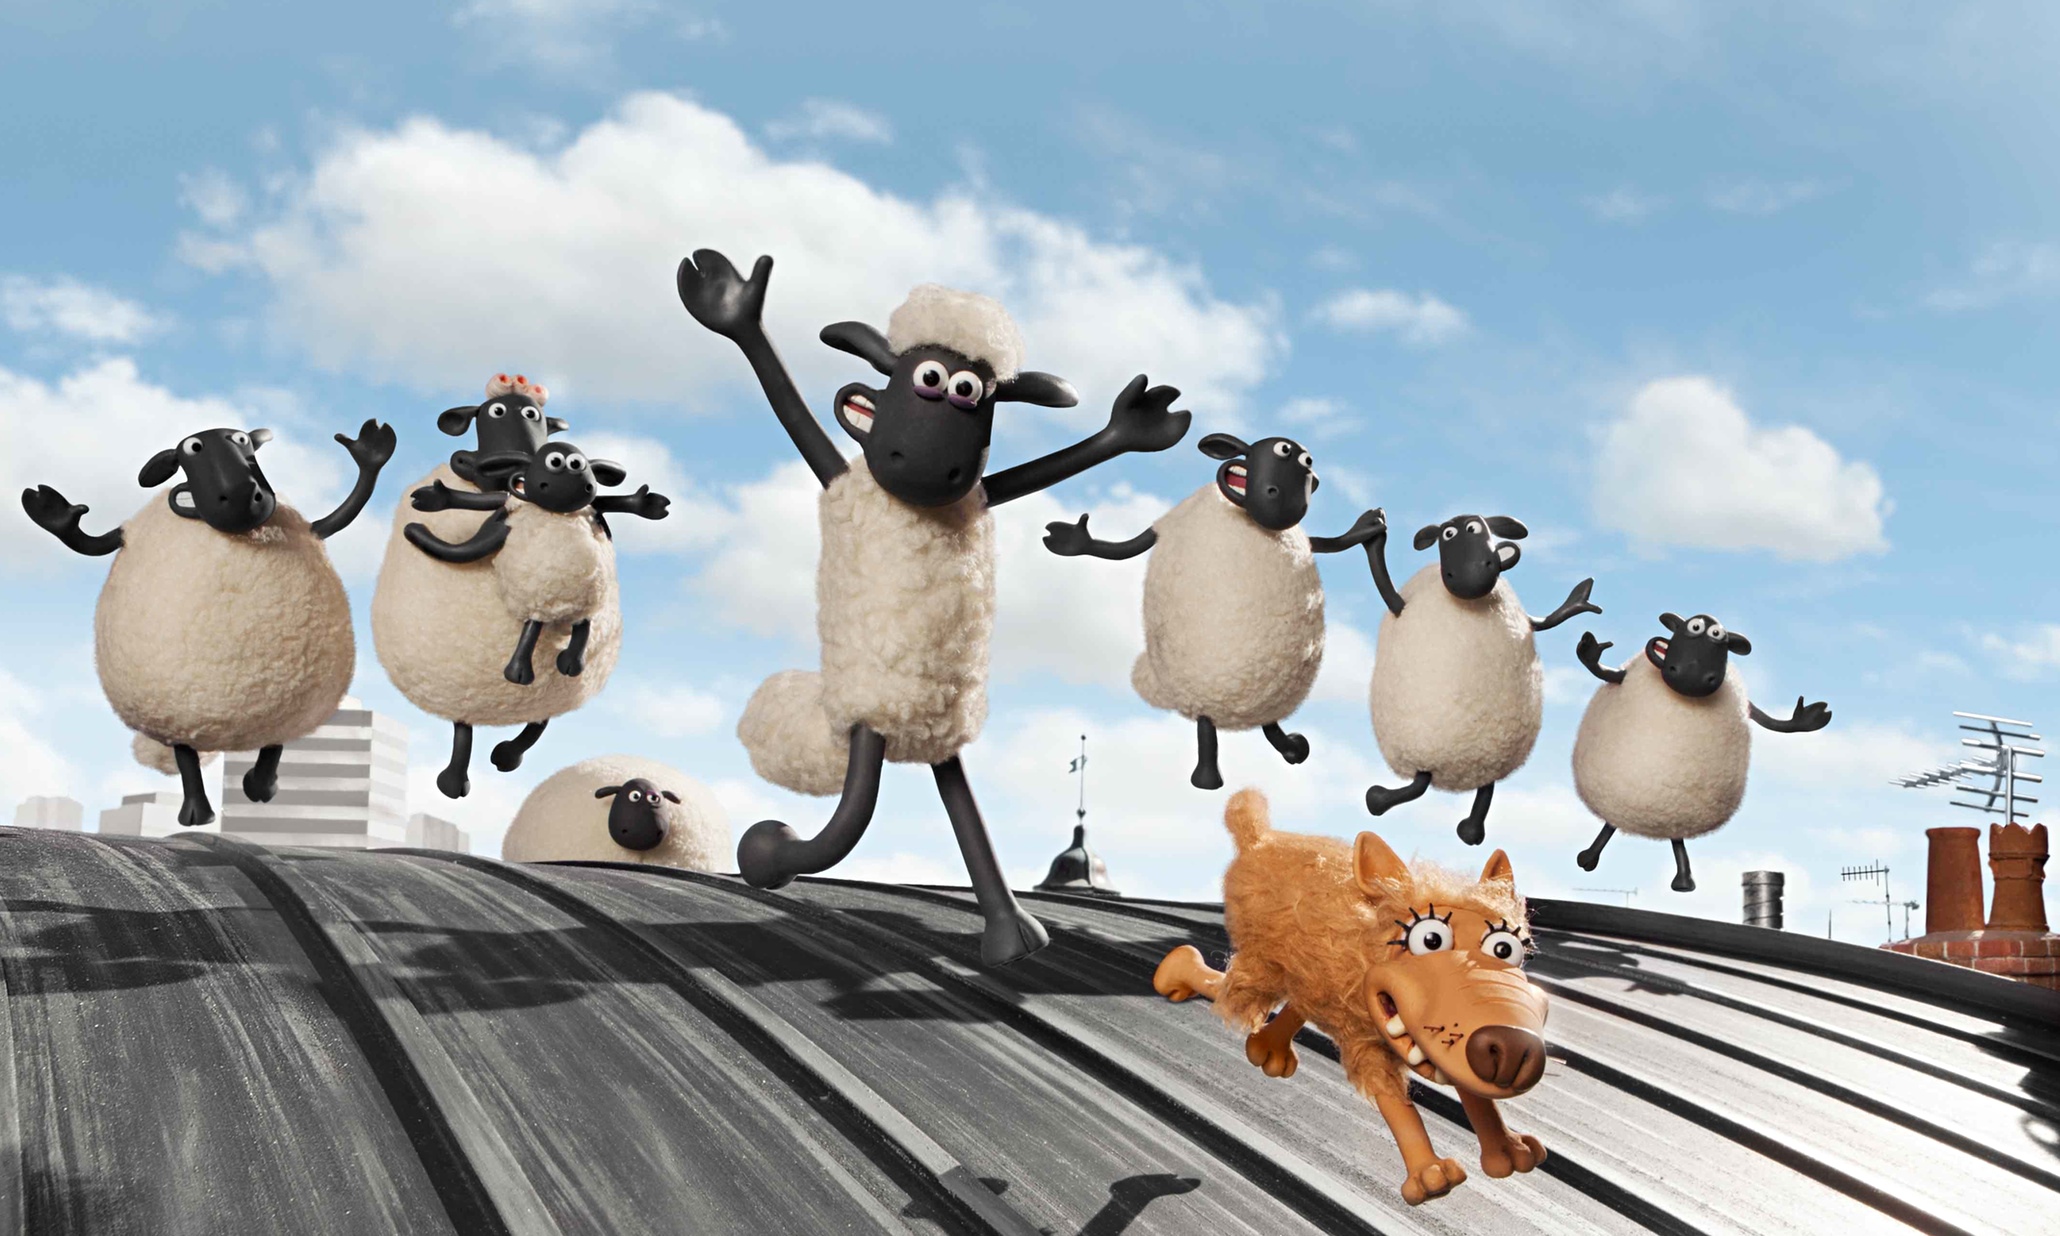 shaun the sheep movie, movie